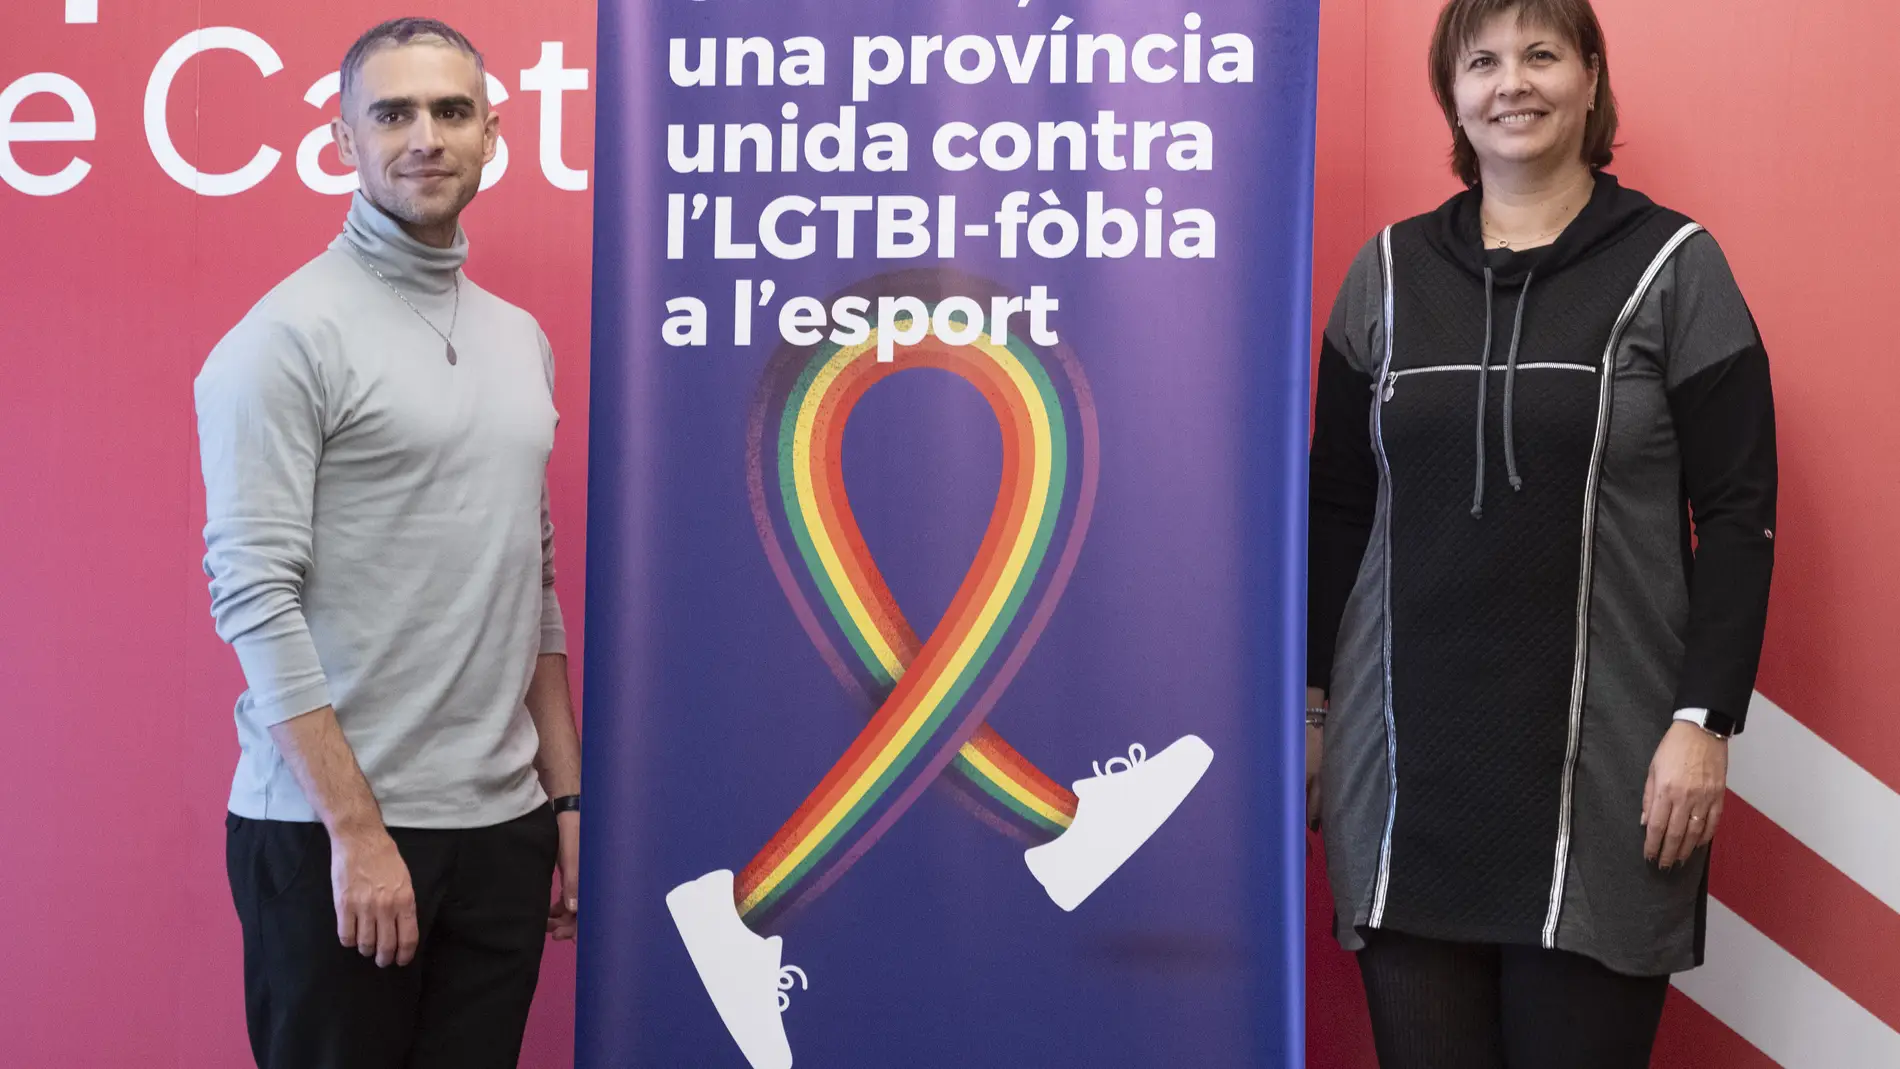 La Diputación de Castellón organiza unas jornadas contra la LGTBIfobia en el deporte